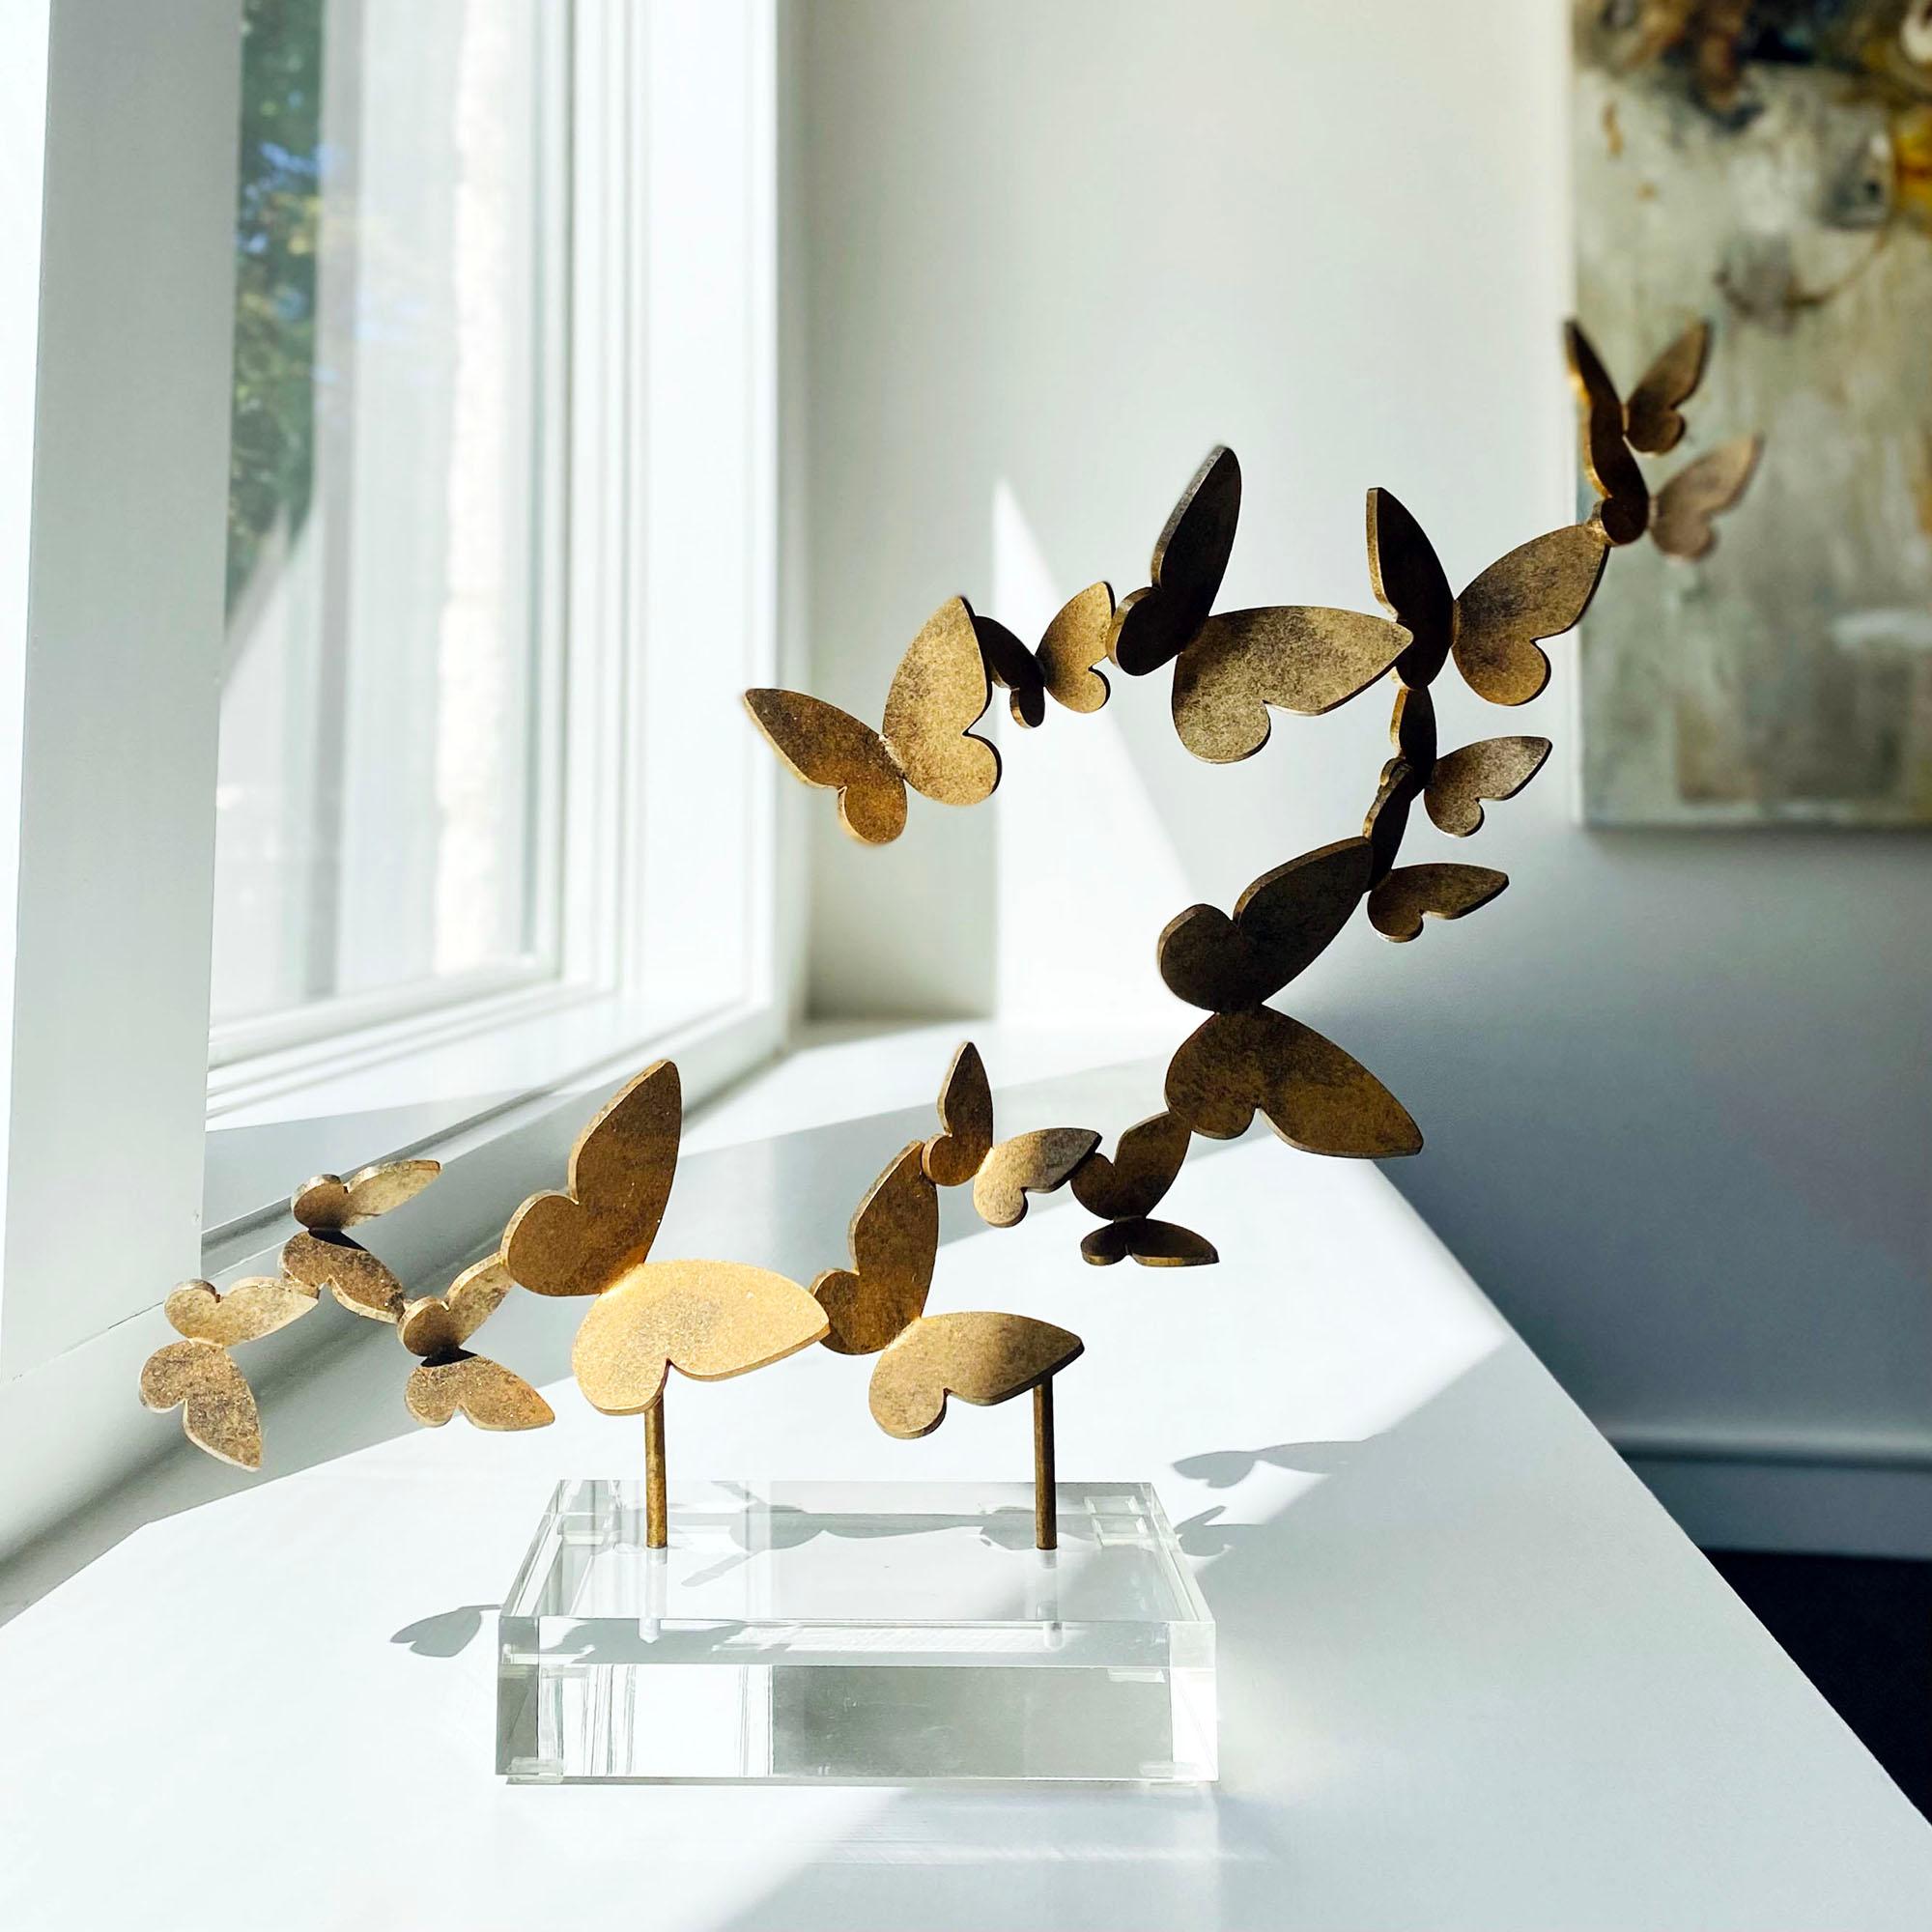 Mit diesem dekorativen Schmetterlings-Accessoire können Sie Ihre kokette, flatterhafte Seite zeigen.  Jedes Flattern, auf Acryl montiert, bringt Bewegung und Freude, wo immer es landet. Schaffen Sie sich einen Raum, in dem Sie sich inmitten der